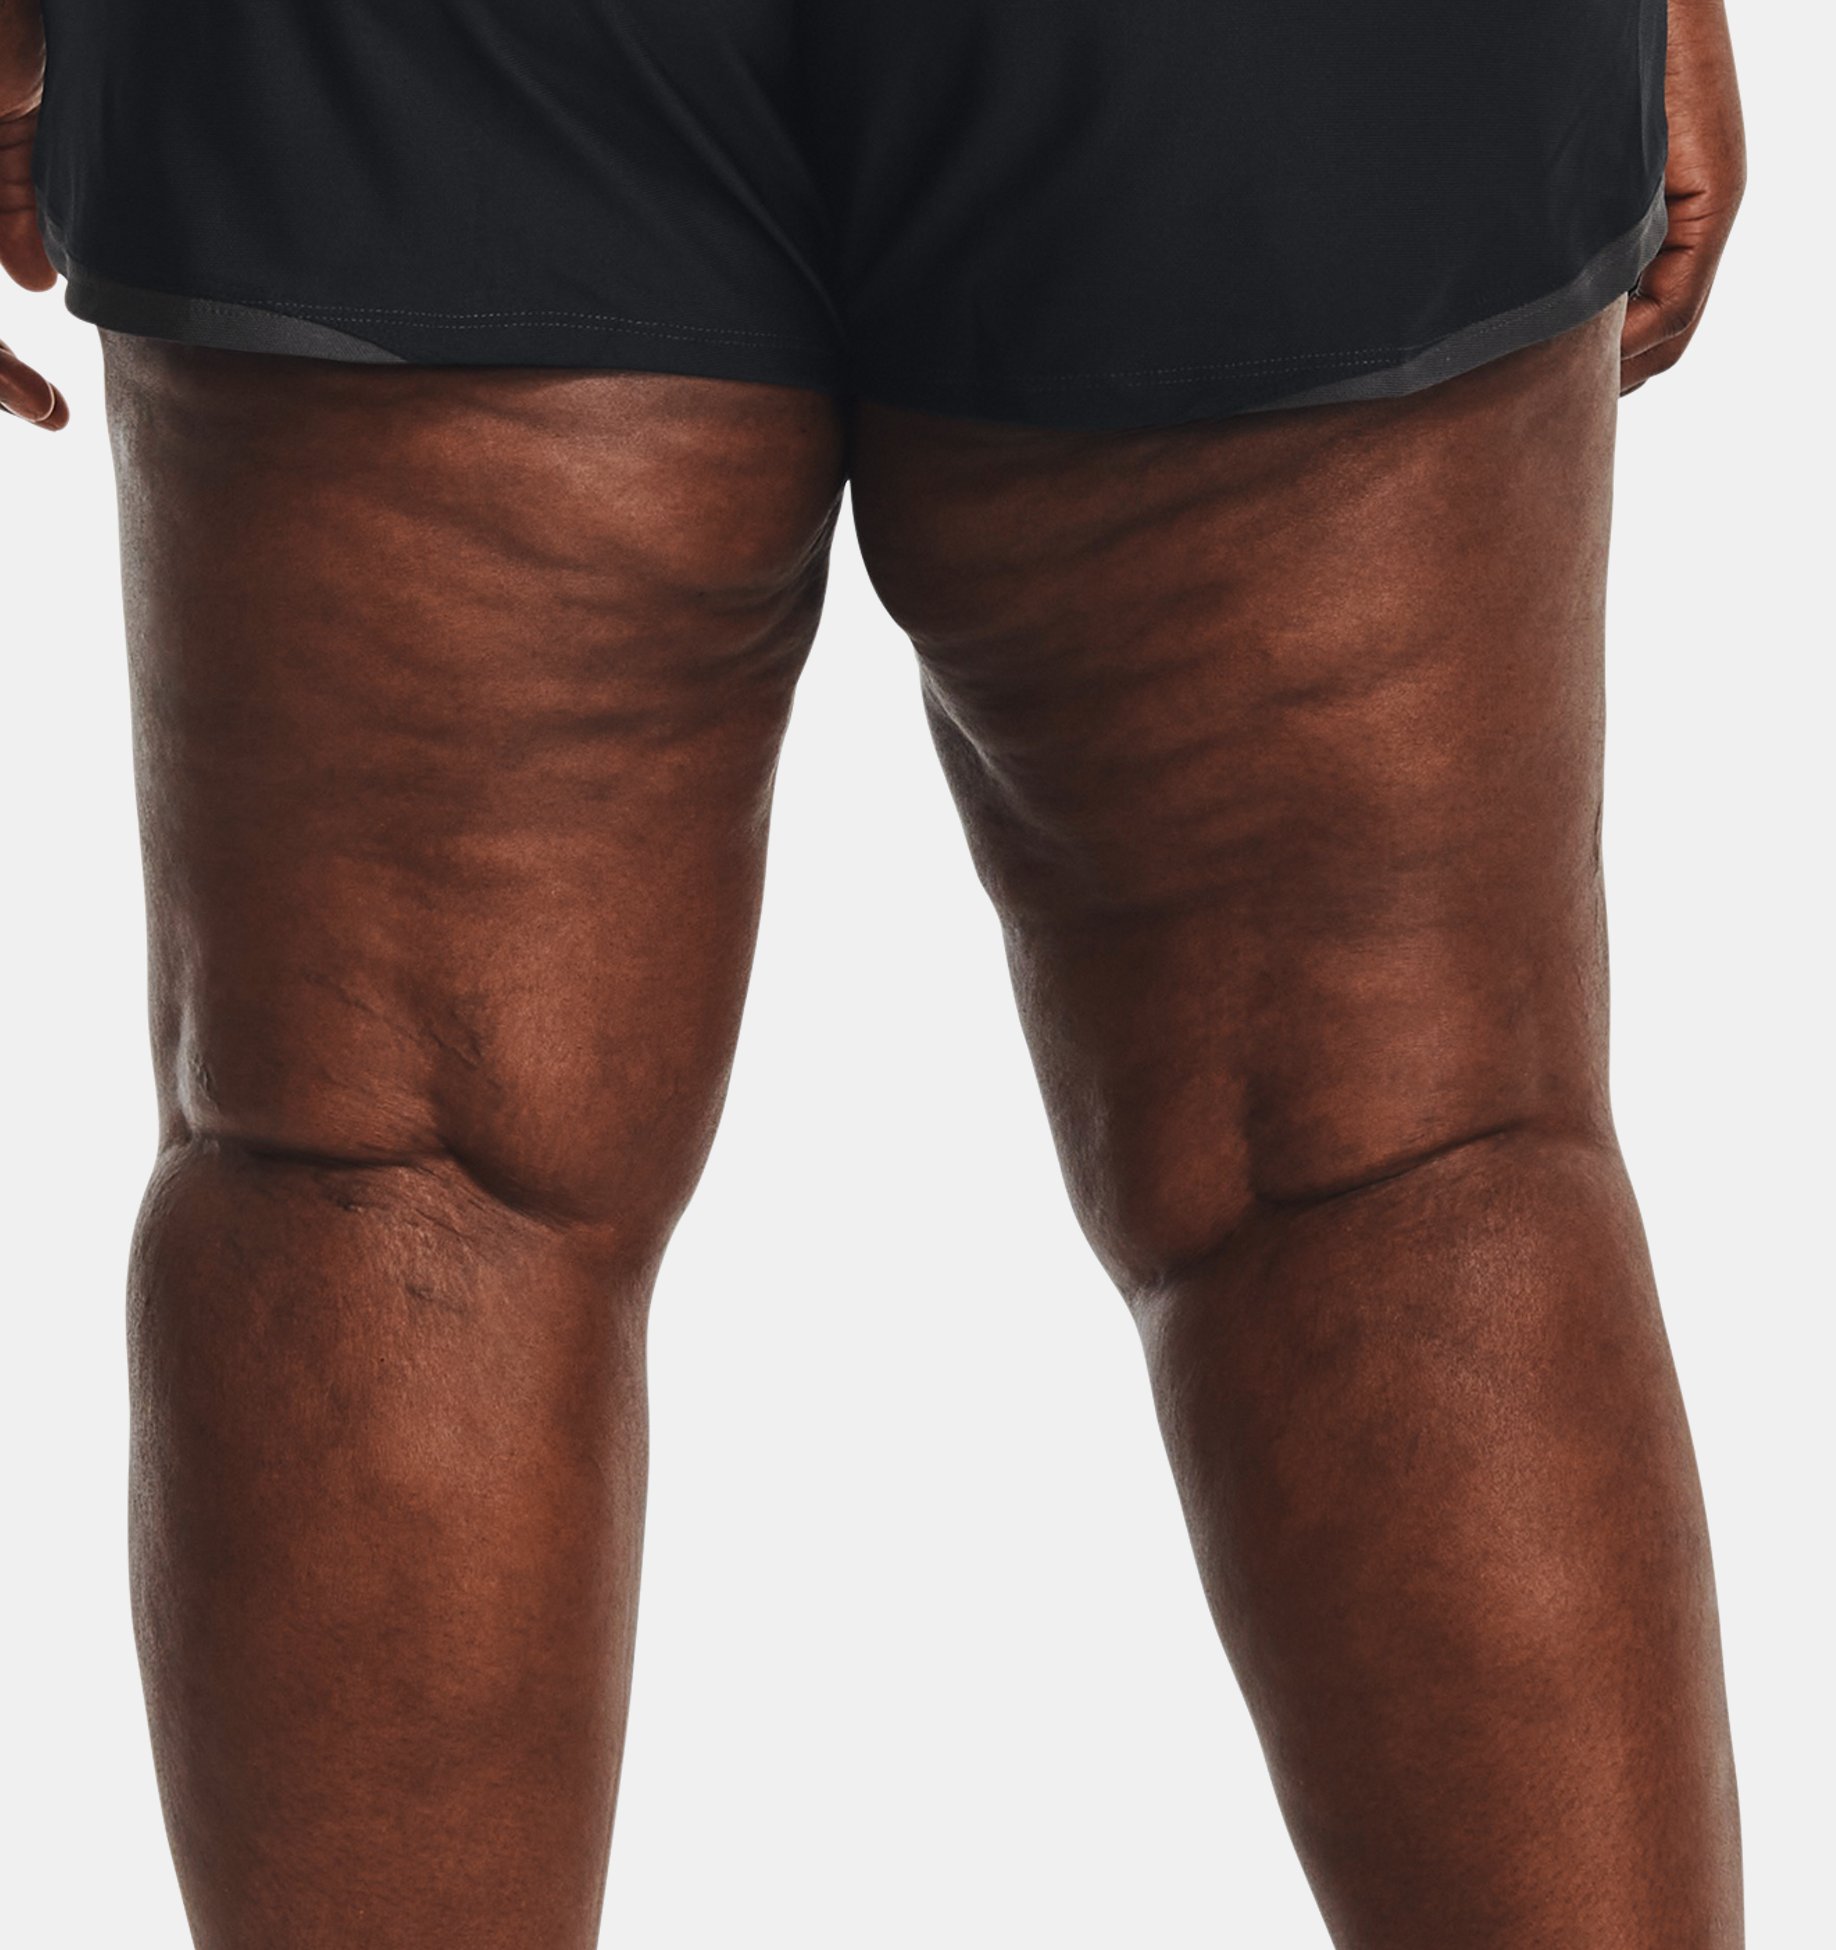 just☆don🏀nba shorts toronto💥raptors shorts